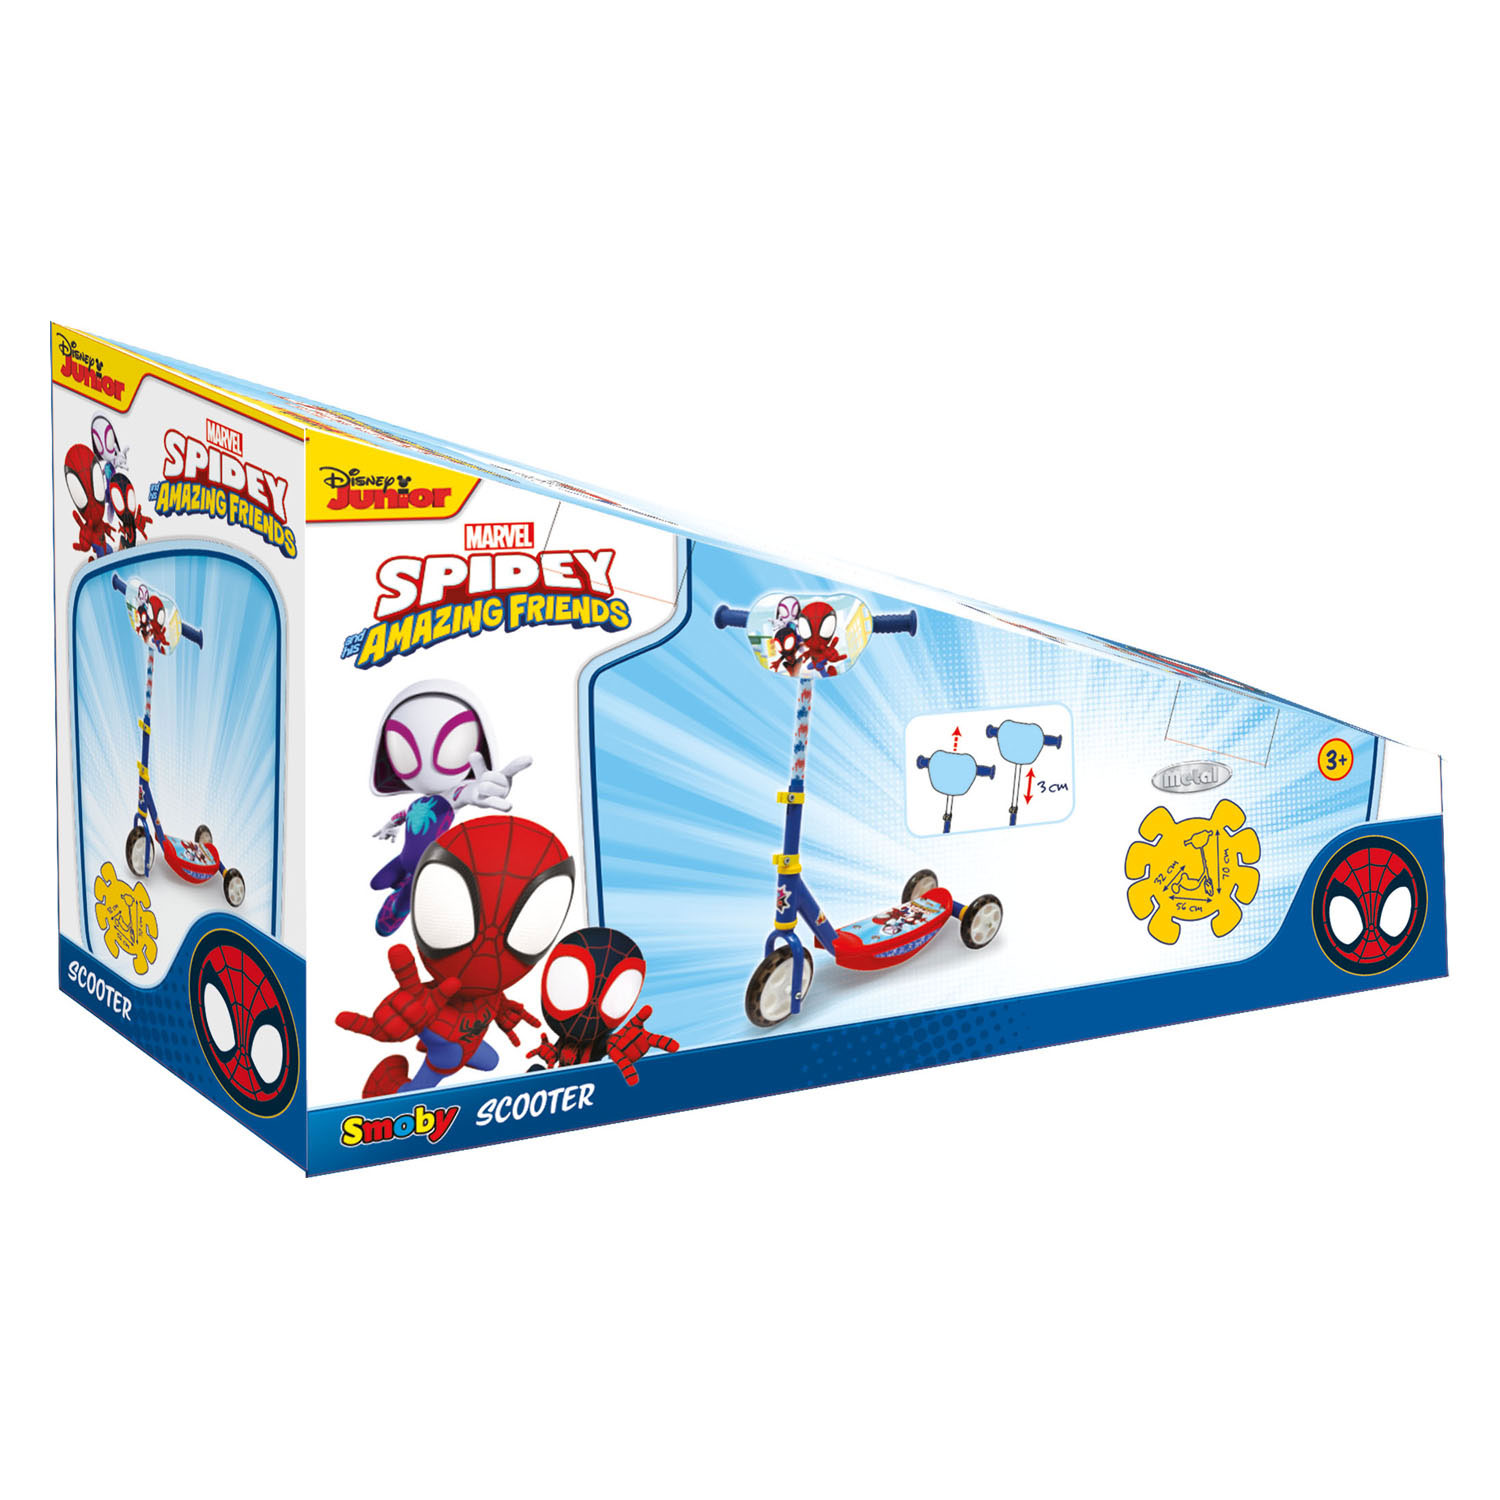 Trottinette pour enfants à 3 roues Smoby Marvel Spidey & Amazing Friends